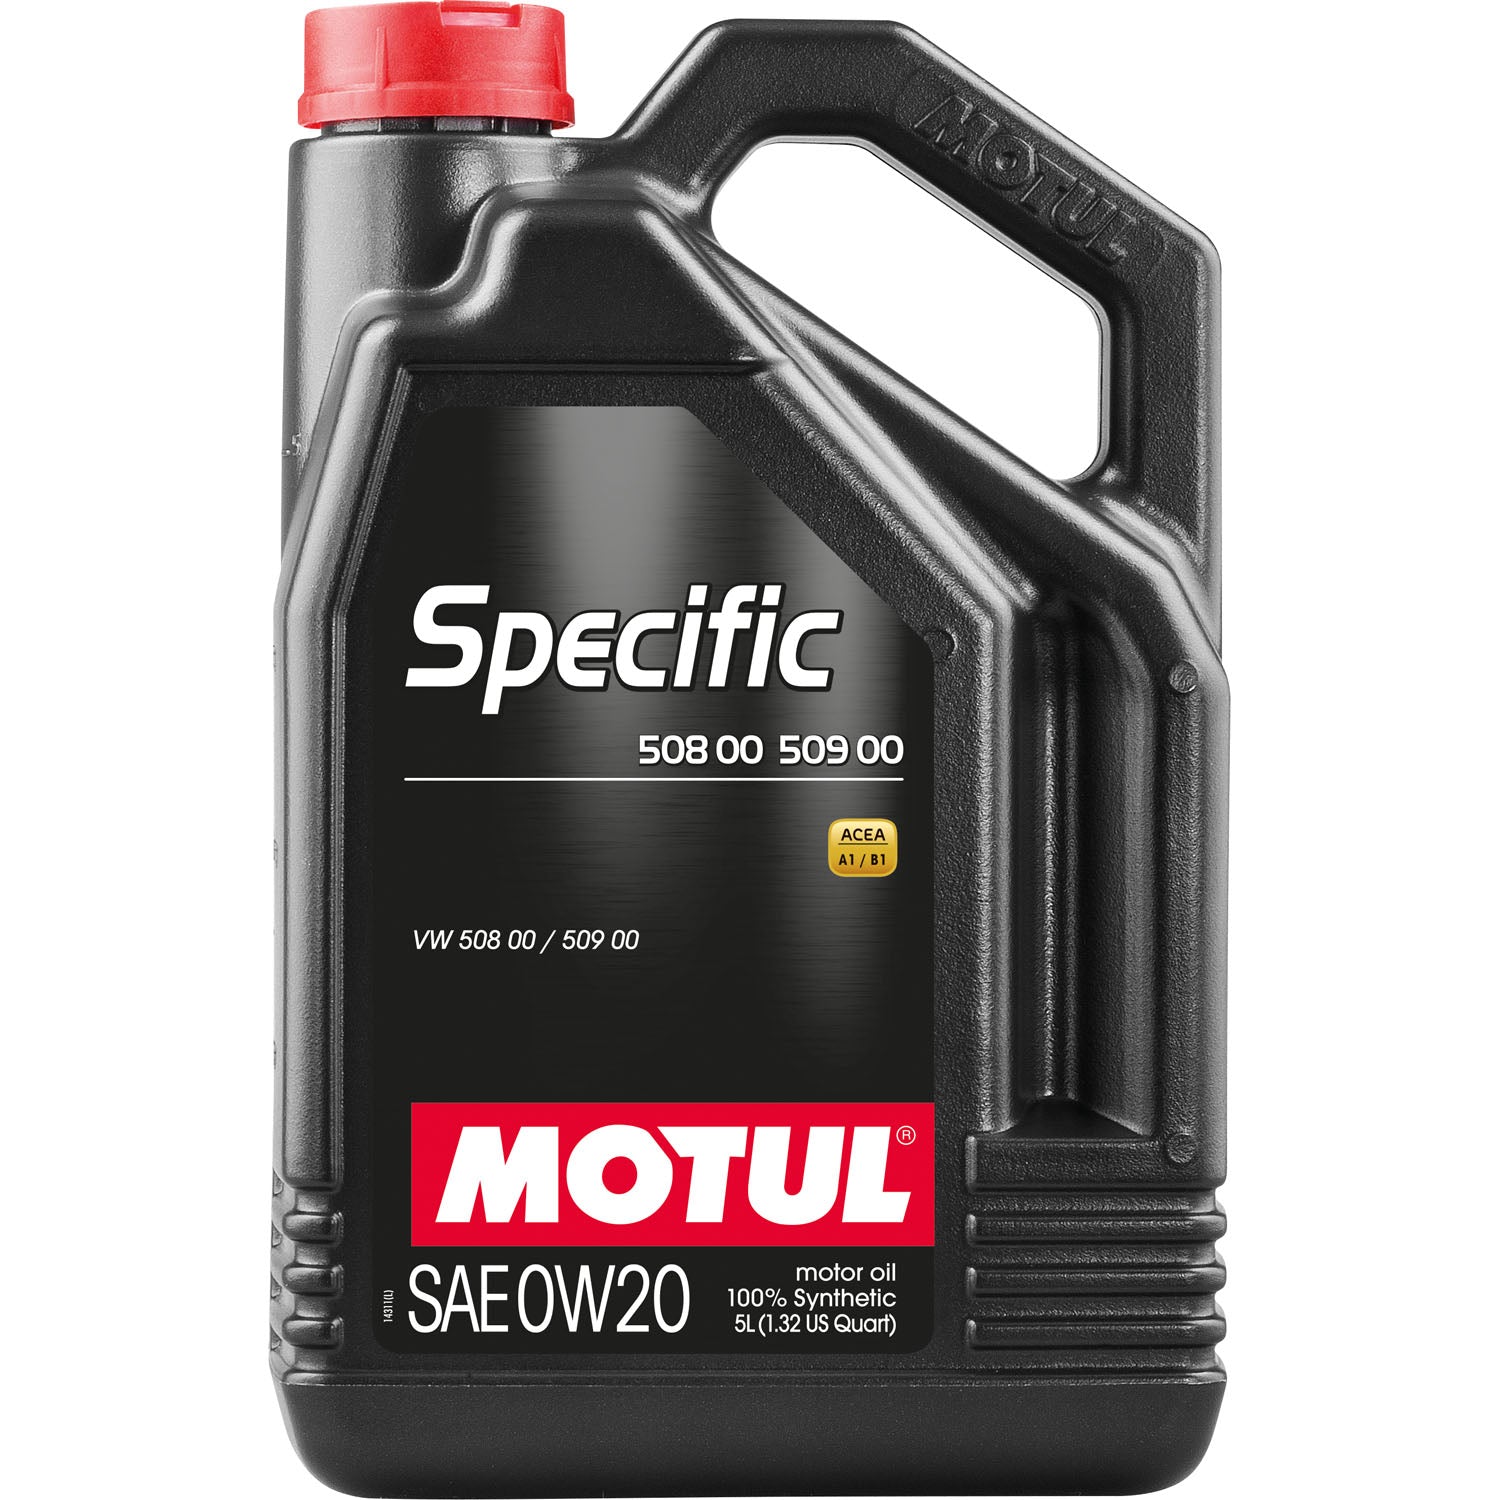 Motul Specific 508 00 509 00 Synthetic Motor Oil 0W20 - 5 Liter